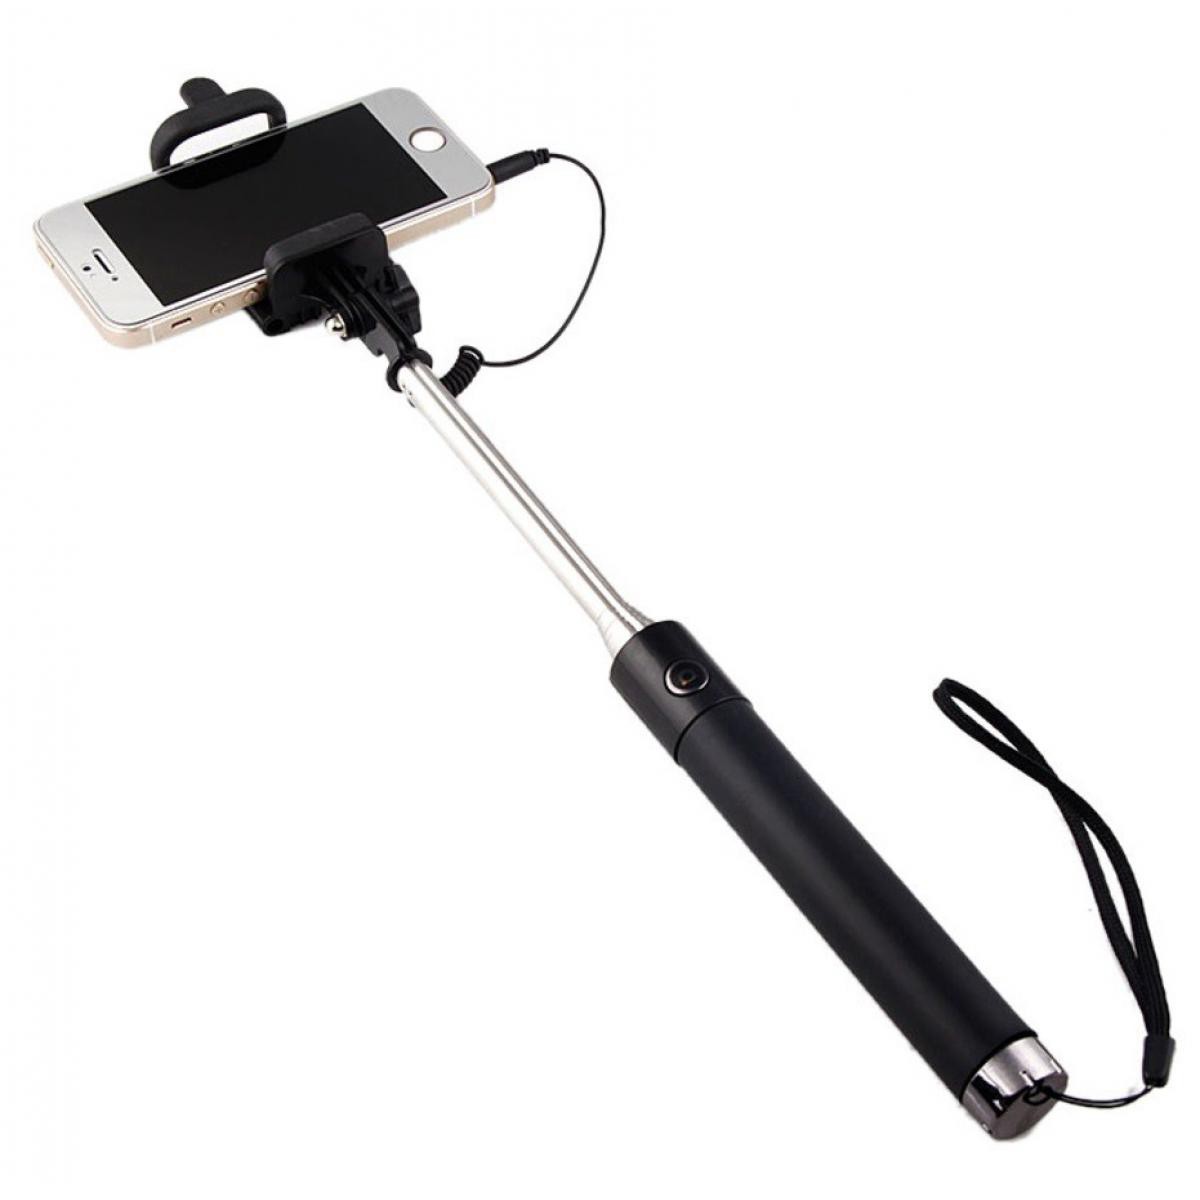 Shot - Perche Selfie Metal pour "SAMSUNG Galaxy S10 Lite" Smartphone avec Cable Jack Selfie Stick Android IOS Reglable Bouton Photo (NOIR) - Autres accessoires smartphone